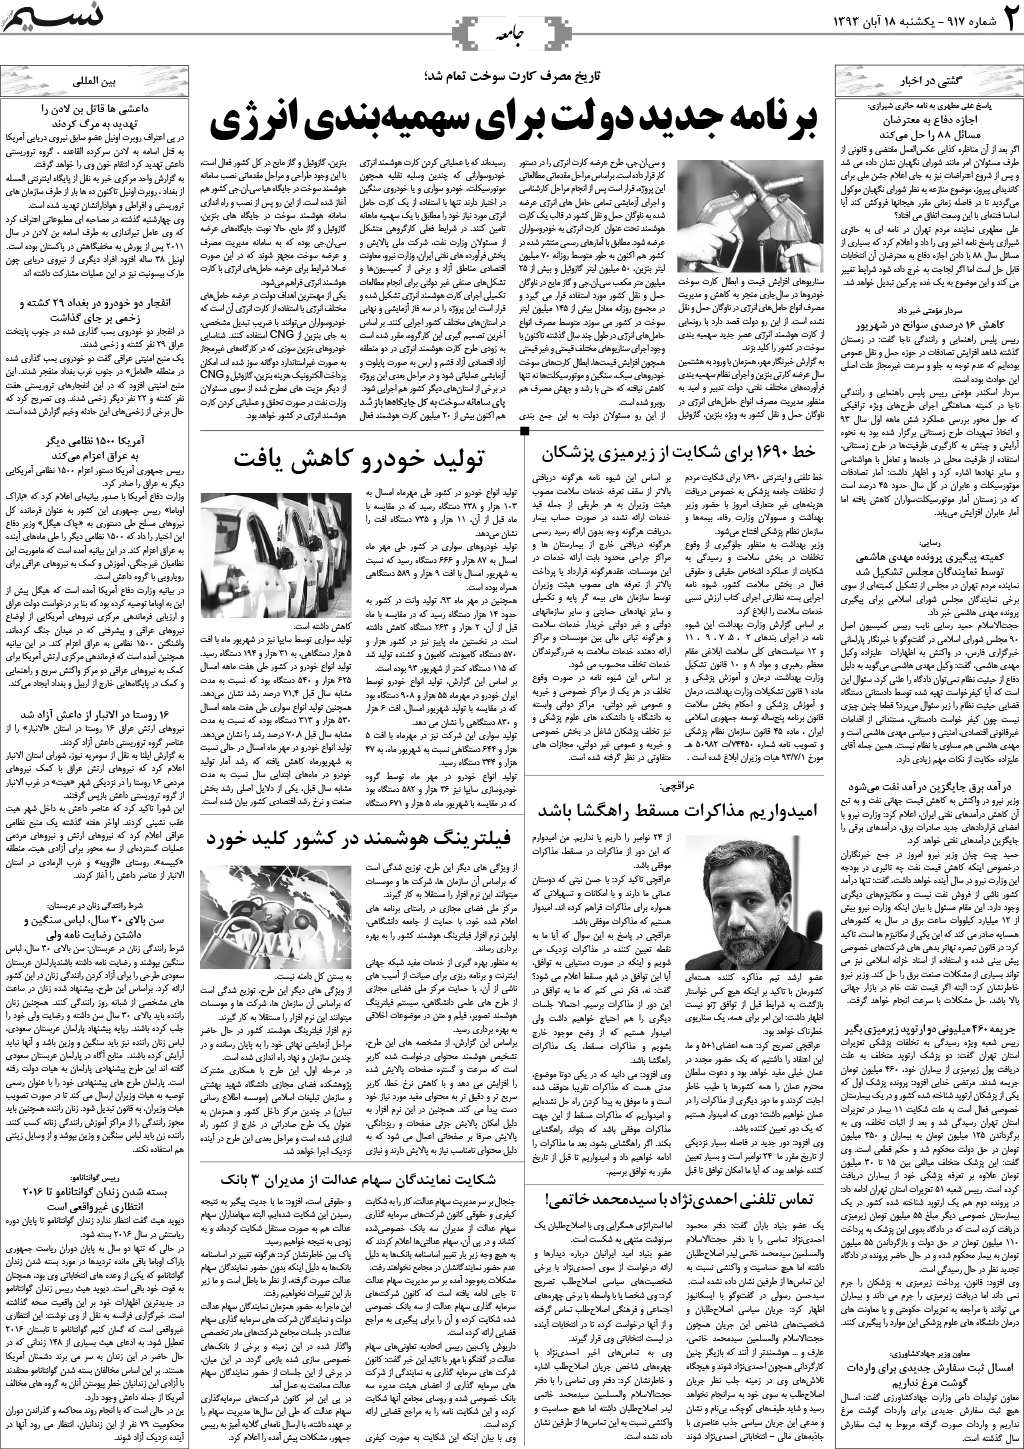 صفحه جامعه روزنامه نسیم شماره 917